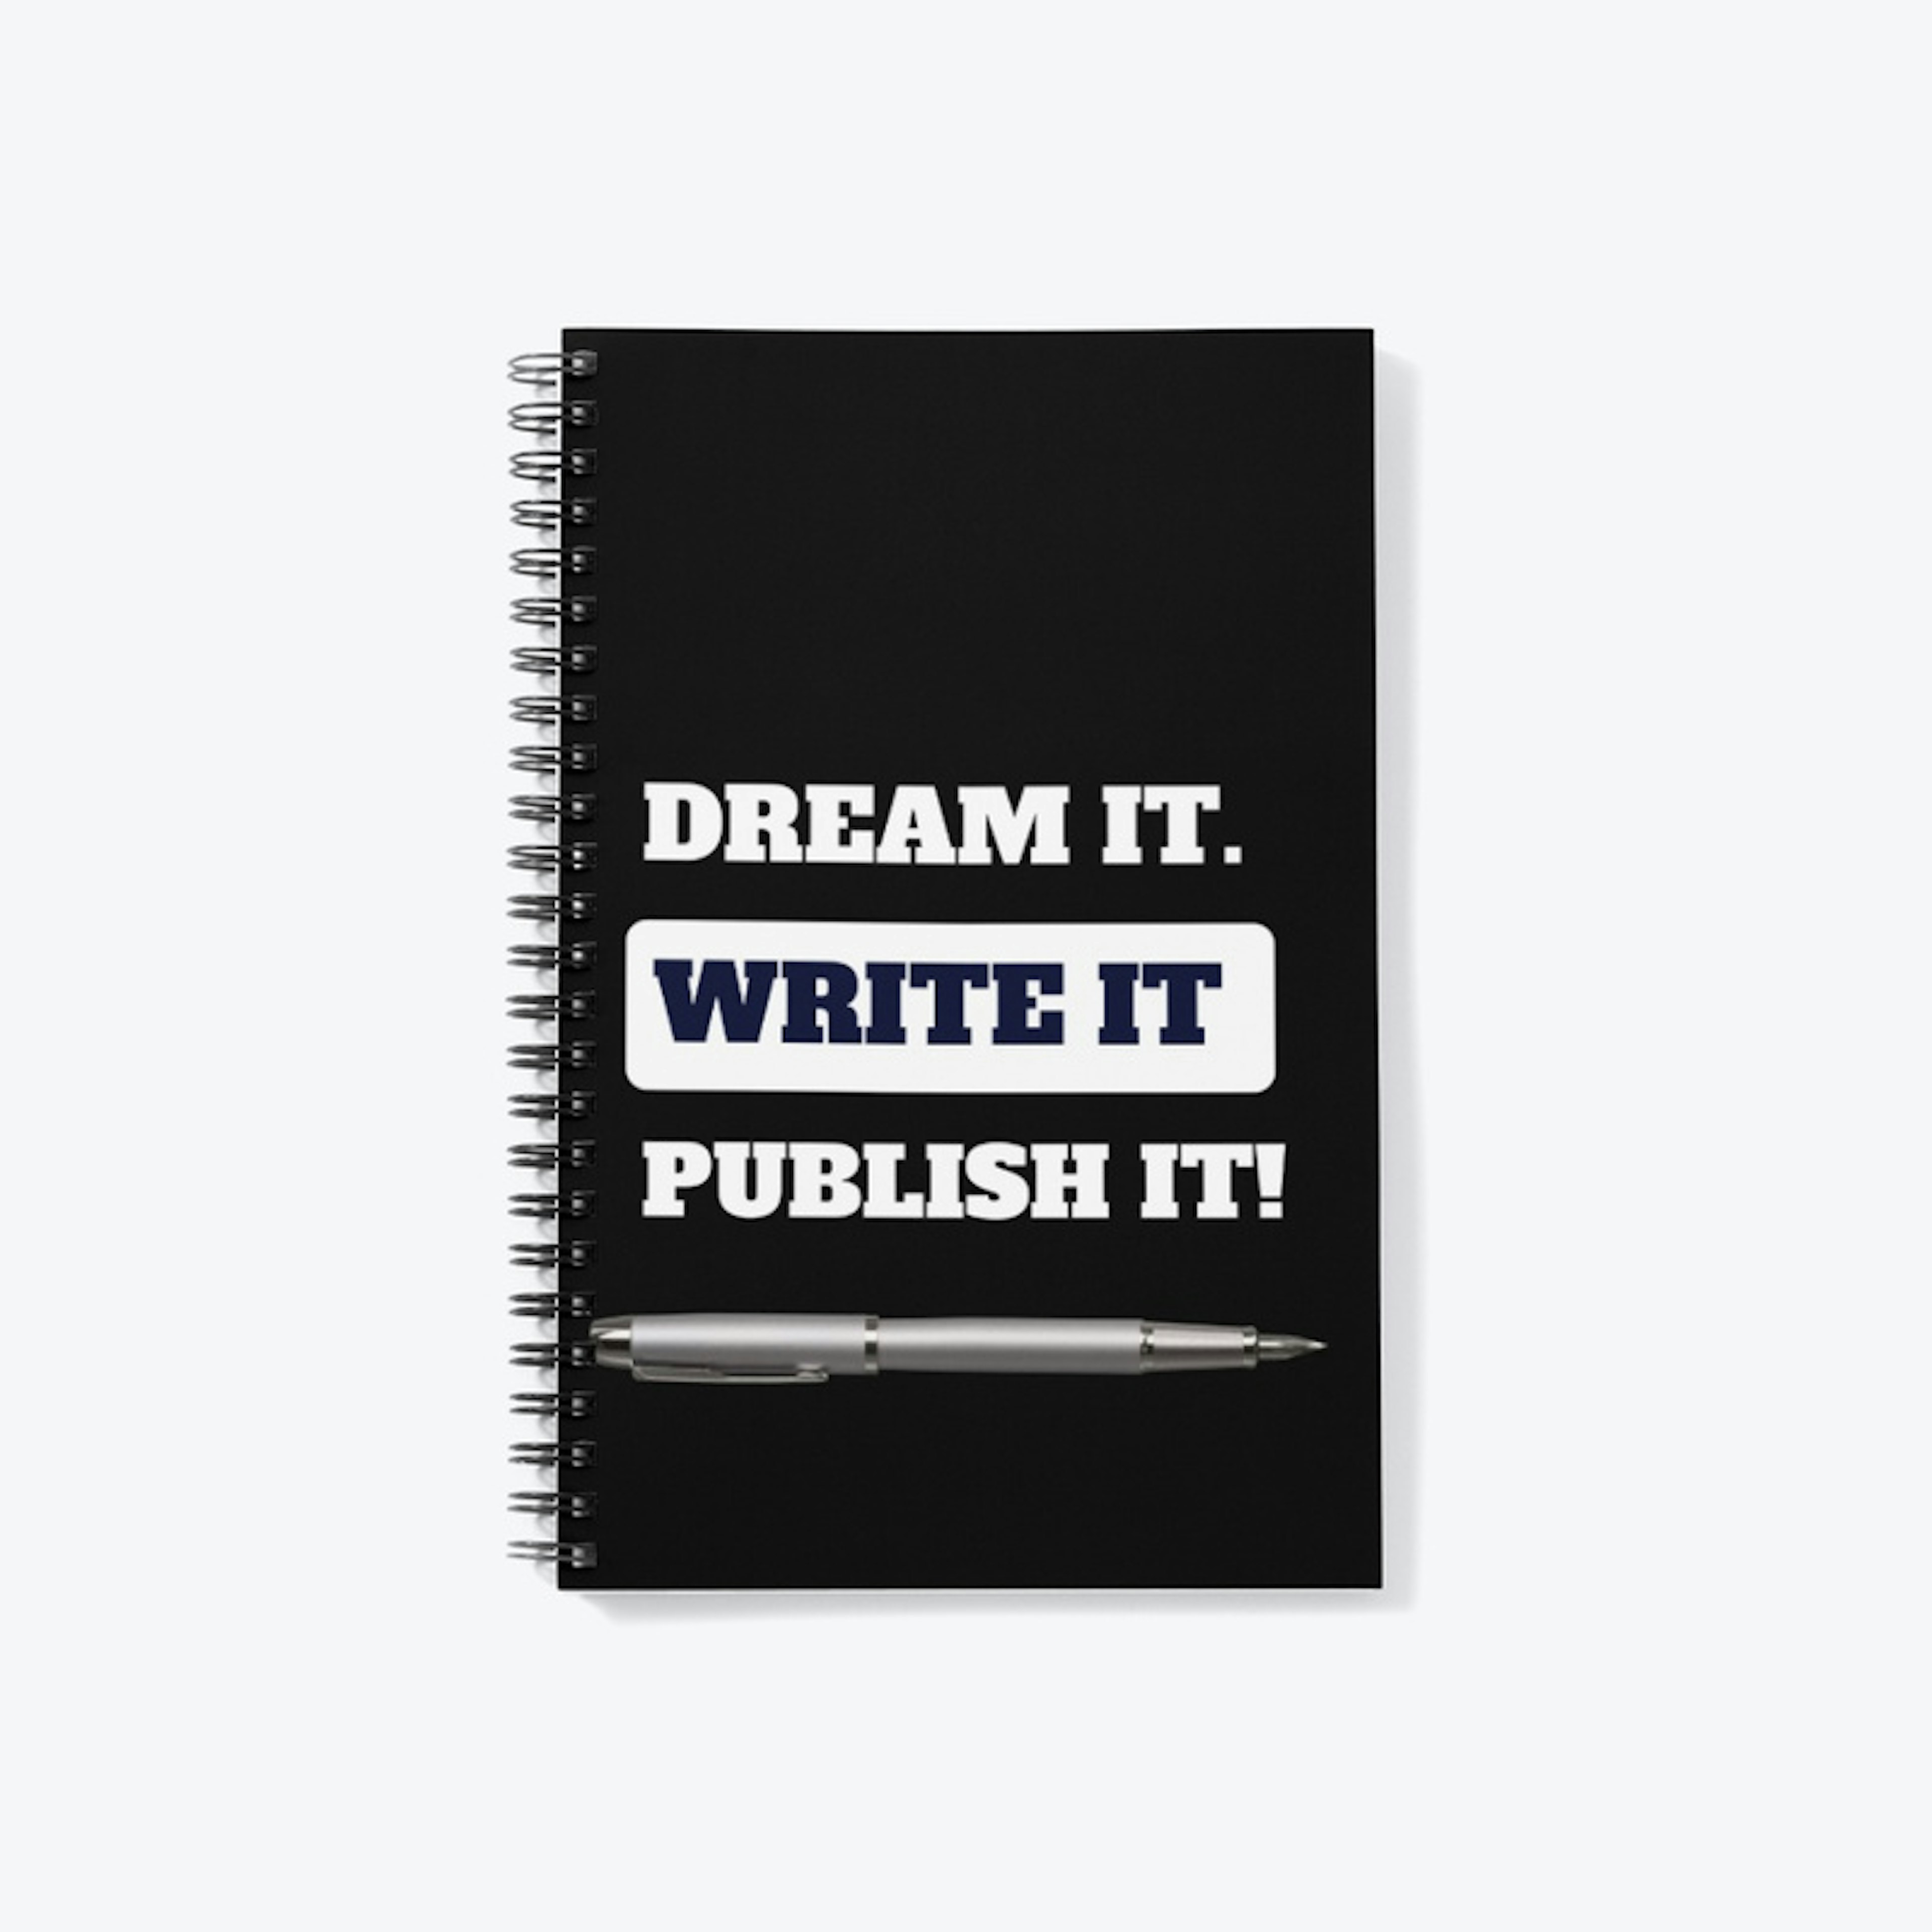 DREAM IT. WRITE IT. PUBLISH IT!